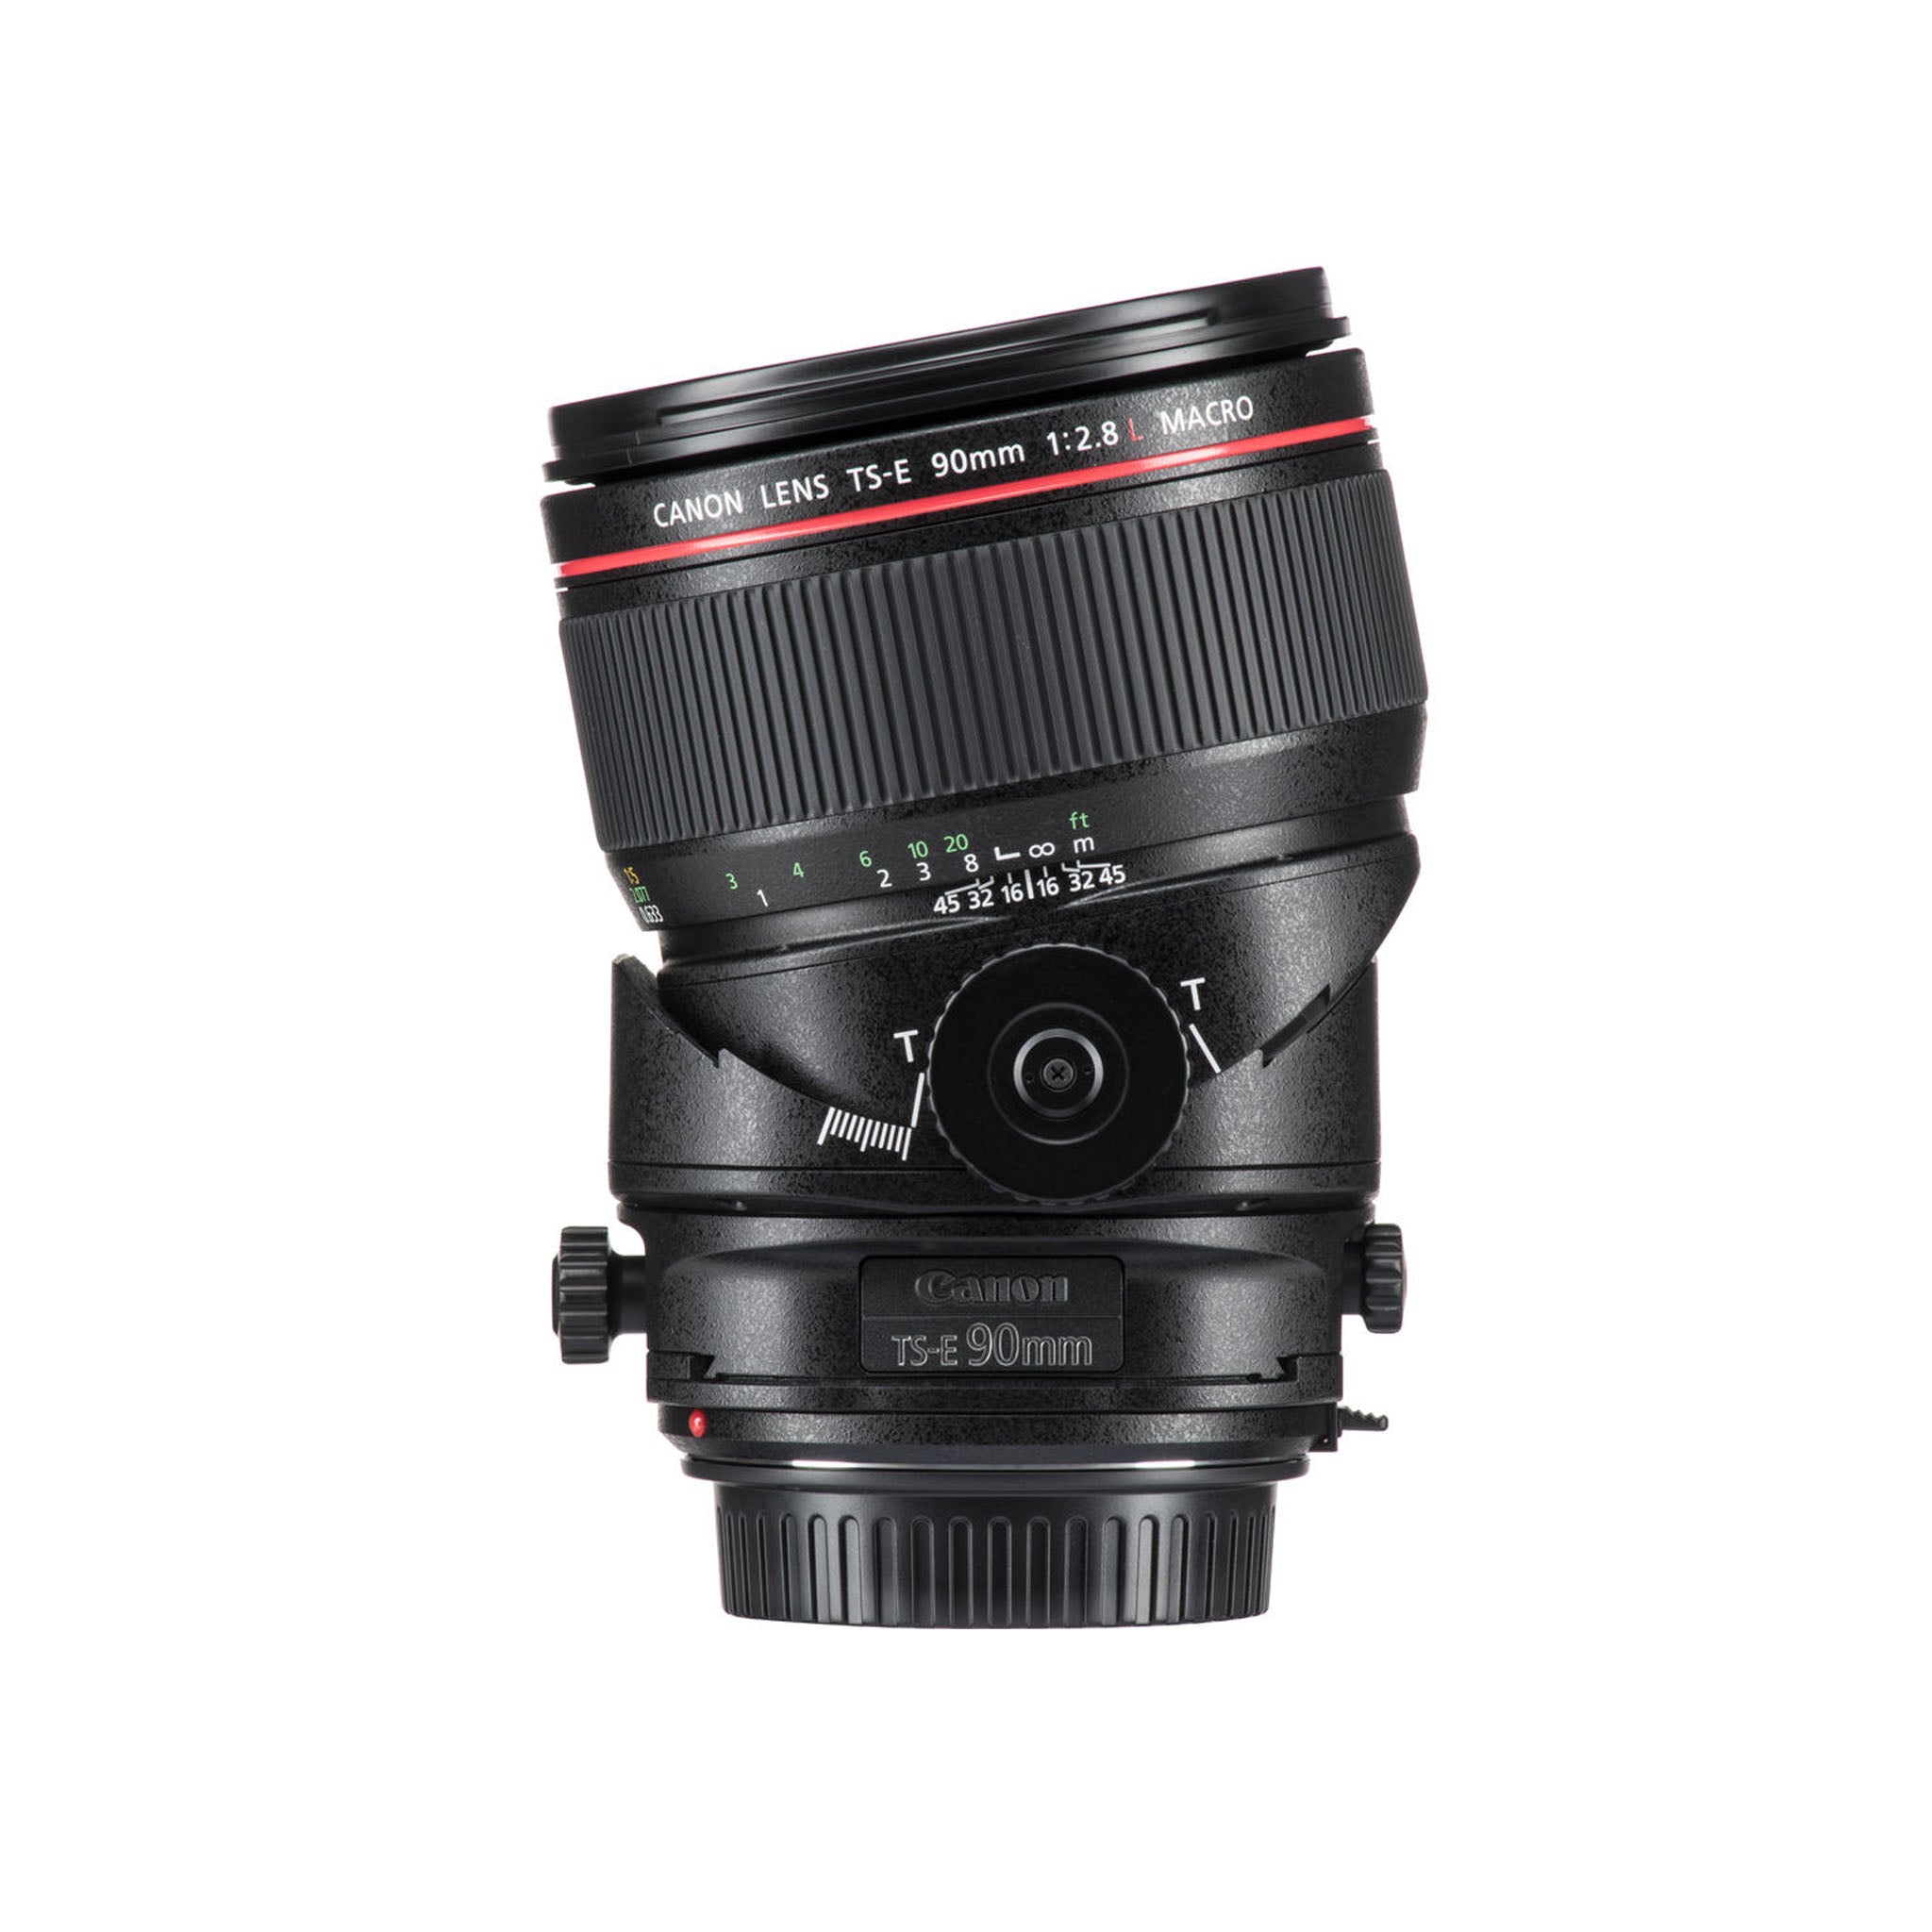 Canon TS-E 90mm F2.8L MACRO Lens